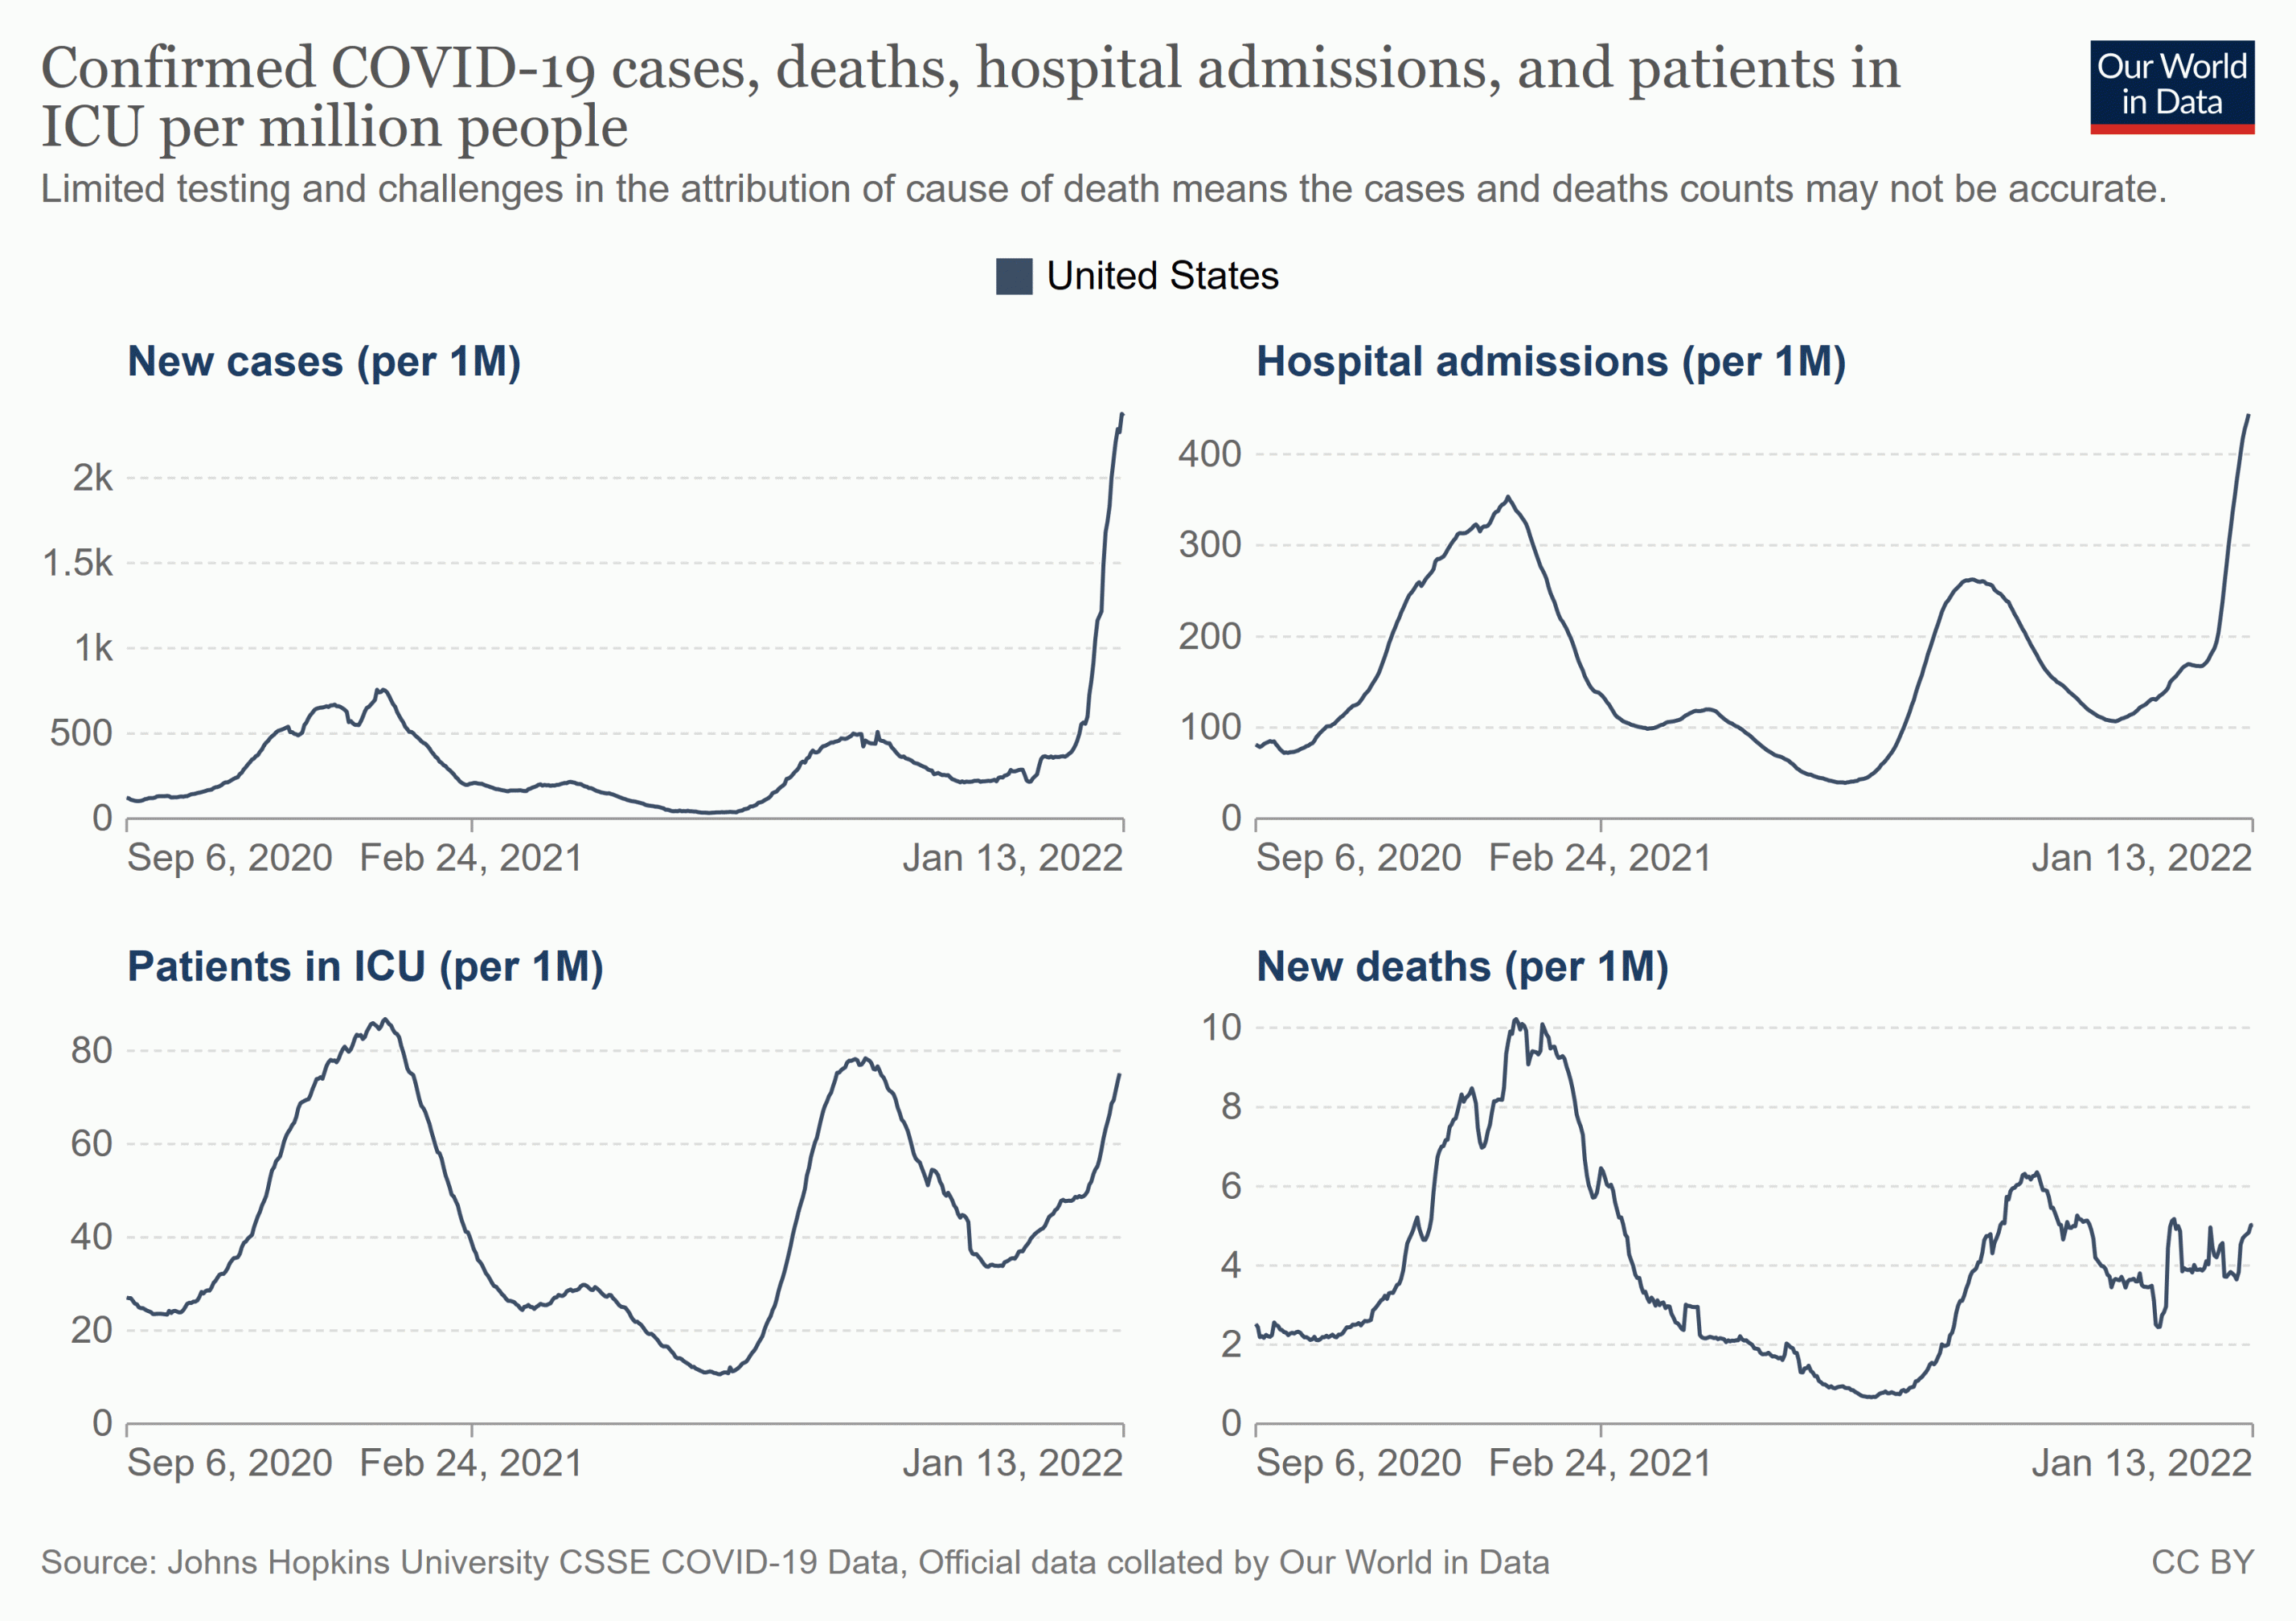 Coronainfektionen, Hospitalisierungen (erste Zeile), sowie in der zweiten Zeile: Intensivpatienten und Todesfälle in den USA seit September 2020, jeweils bezogen auf eine Million Einwohner.